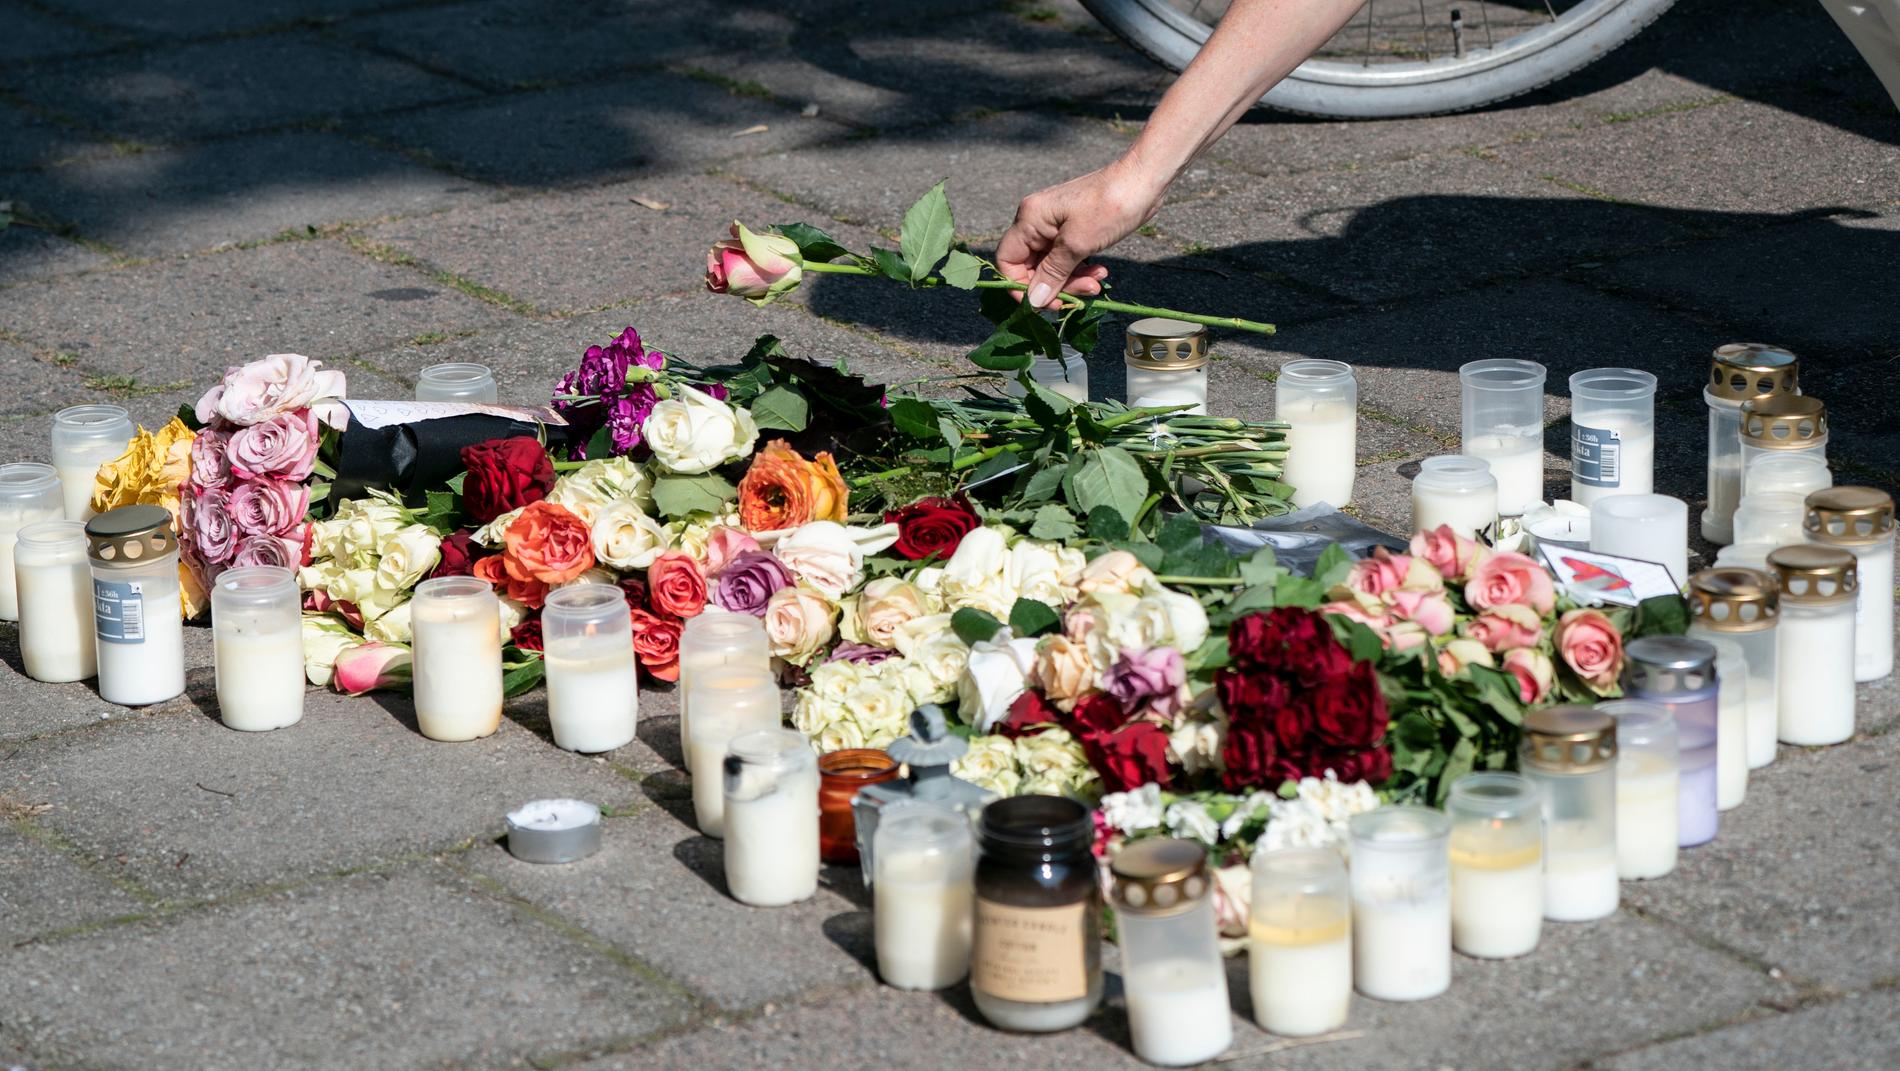 Arkivbild. Många har engagerat sig i mordet på den unga mamman i Malmö. Nu varnar polisen för att vittnesmål kan bli juridiskt värdelösa d åvittnen pratar med media innan de hörts av polis.